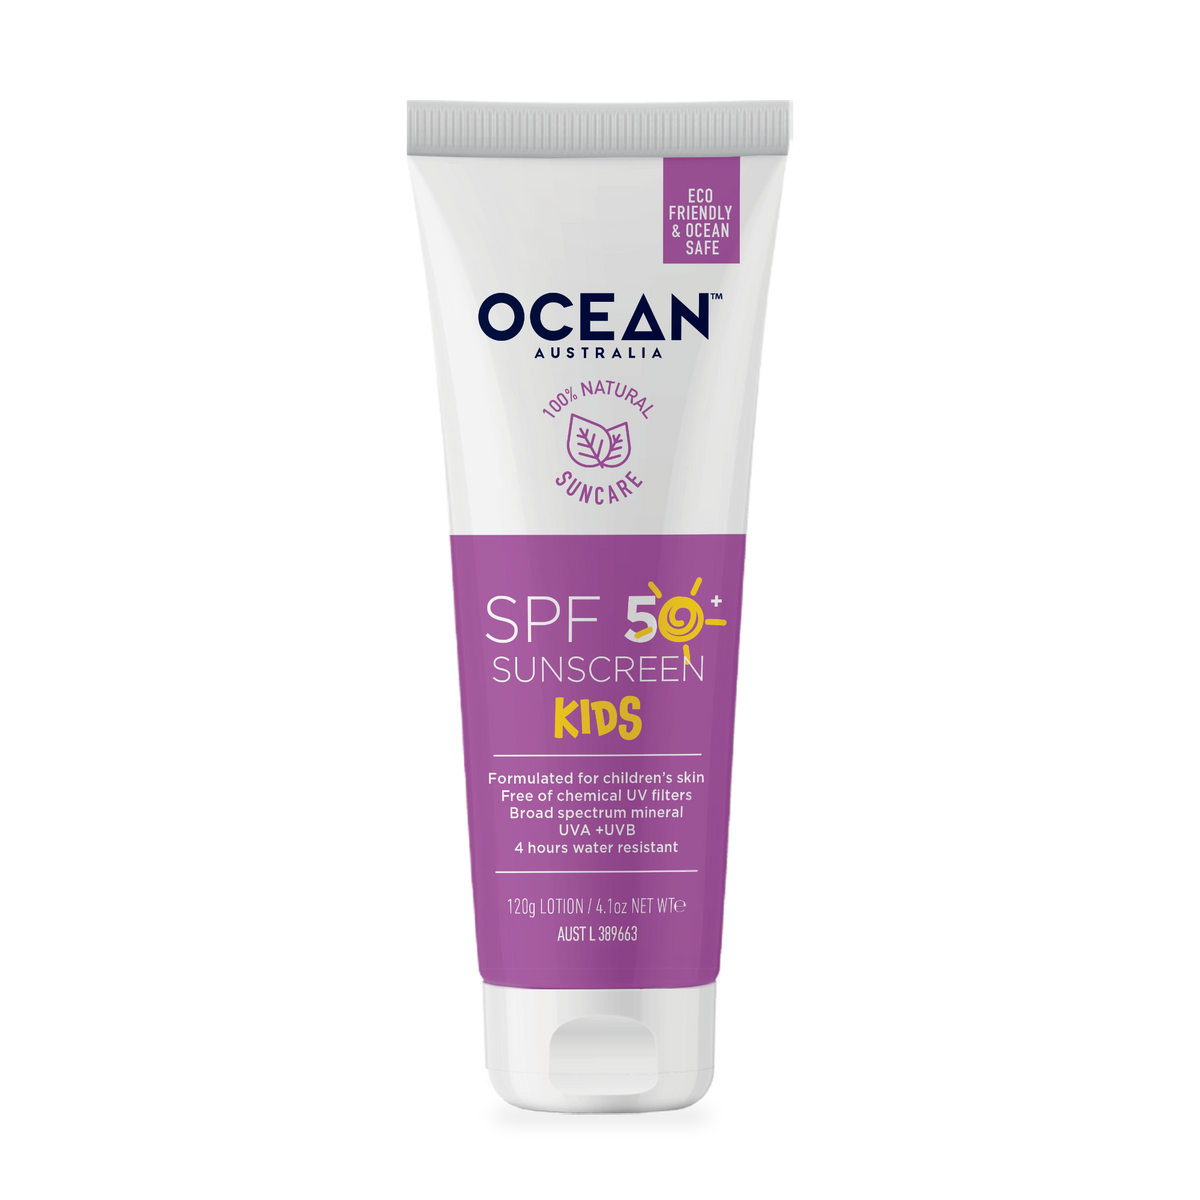 Ocean Australia SPF 50+ Kids Sunscreen 120g